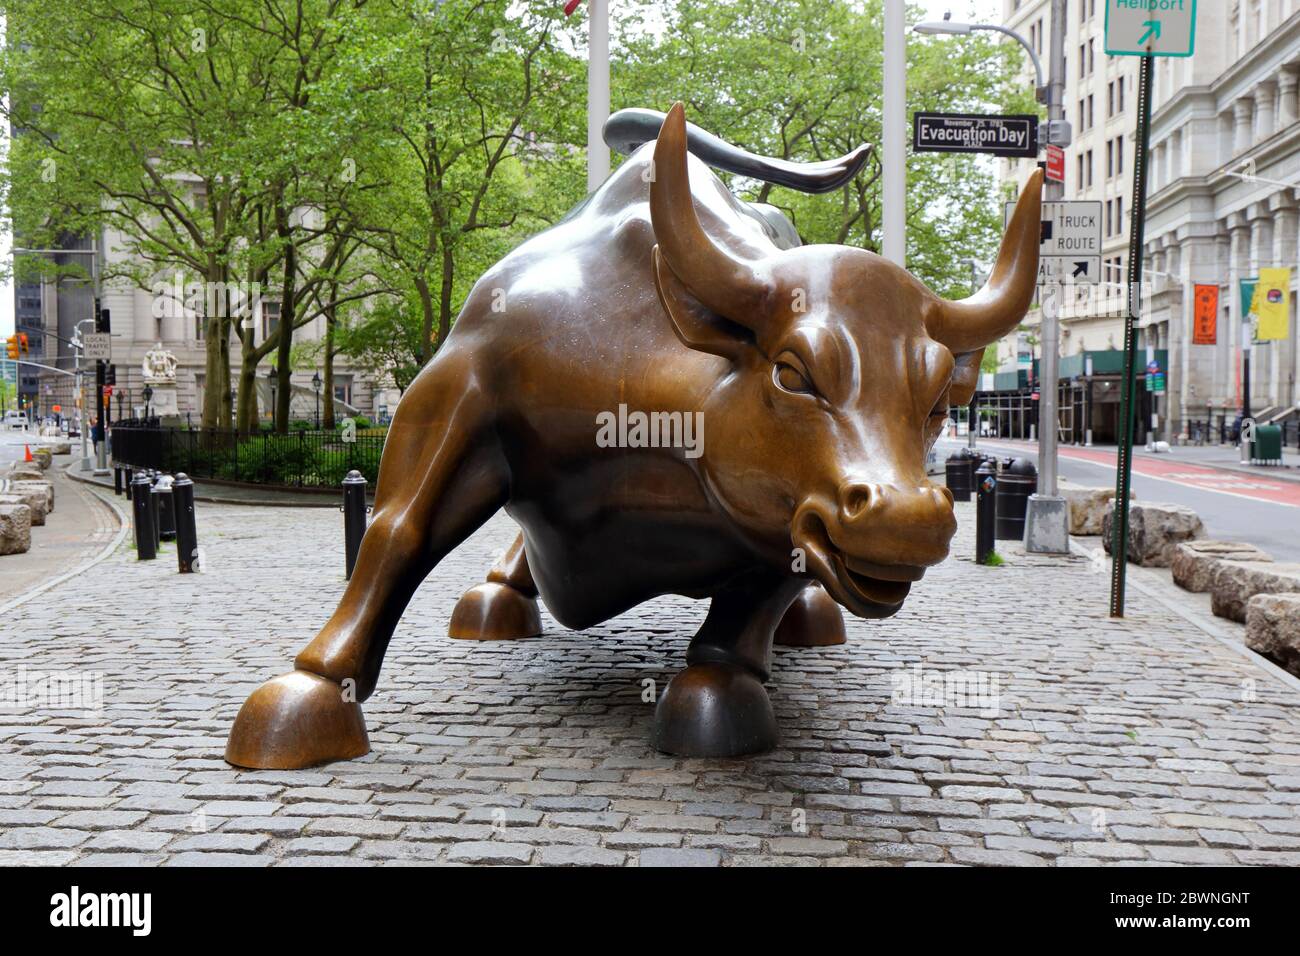 Charging Bull von Arturo Di Modica. Eine Bronzeskulptur, die die Wall Street darstellt, befindet sich in Bowling Green, Manhattan, New York. Keine Menschen Stockfoto